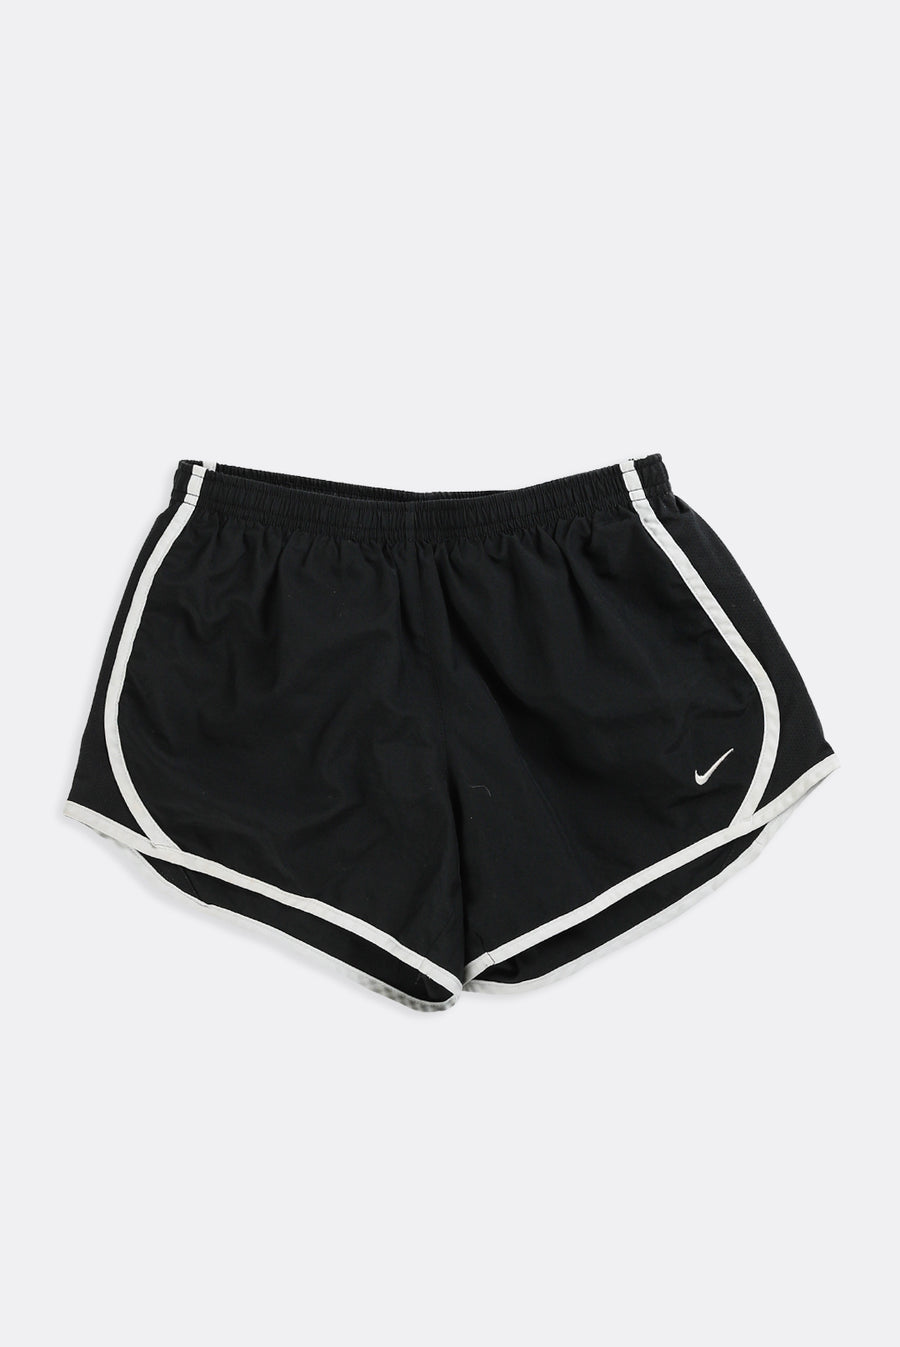 Vintage Nike Shorts - XS